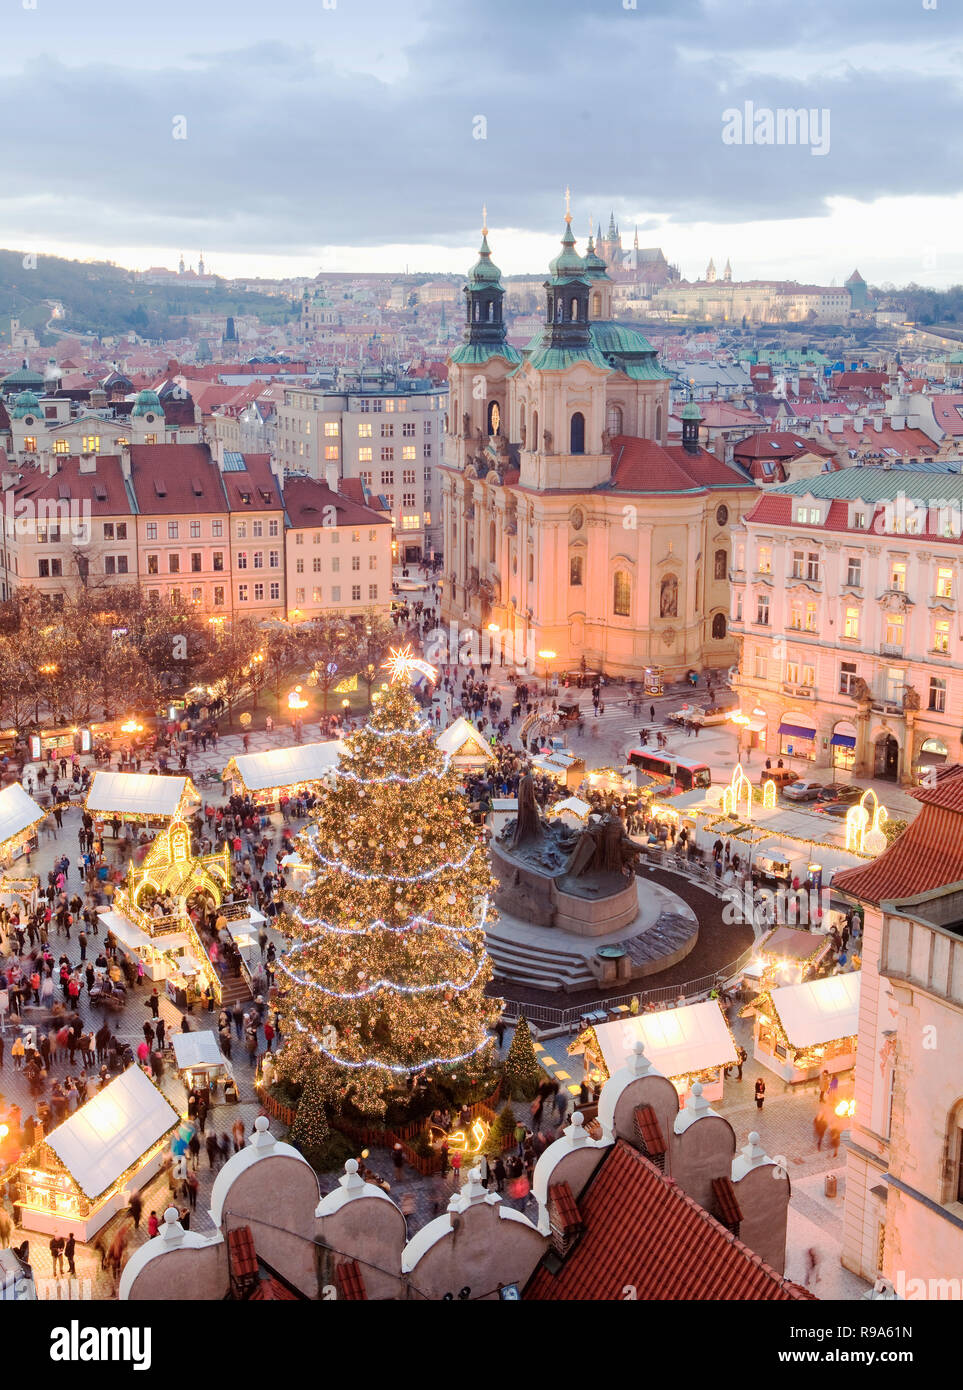 Praga, República Checa - Mercado navideño en la Plaza de la Ciudad Vieja Foto de stock